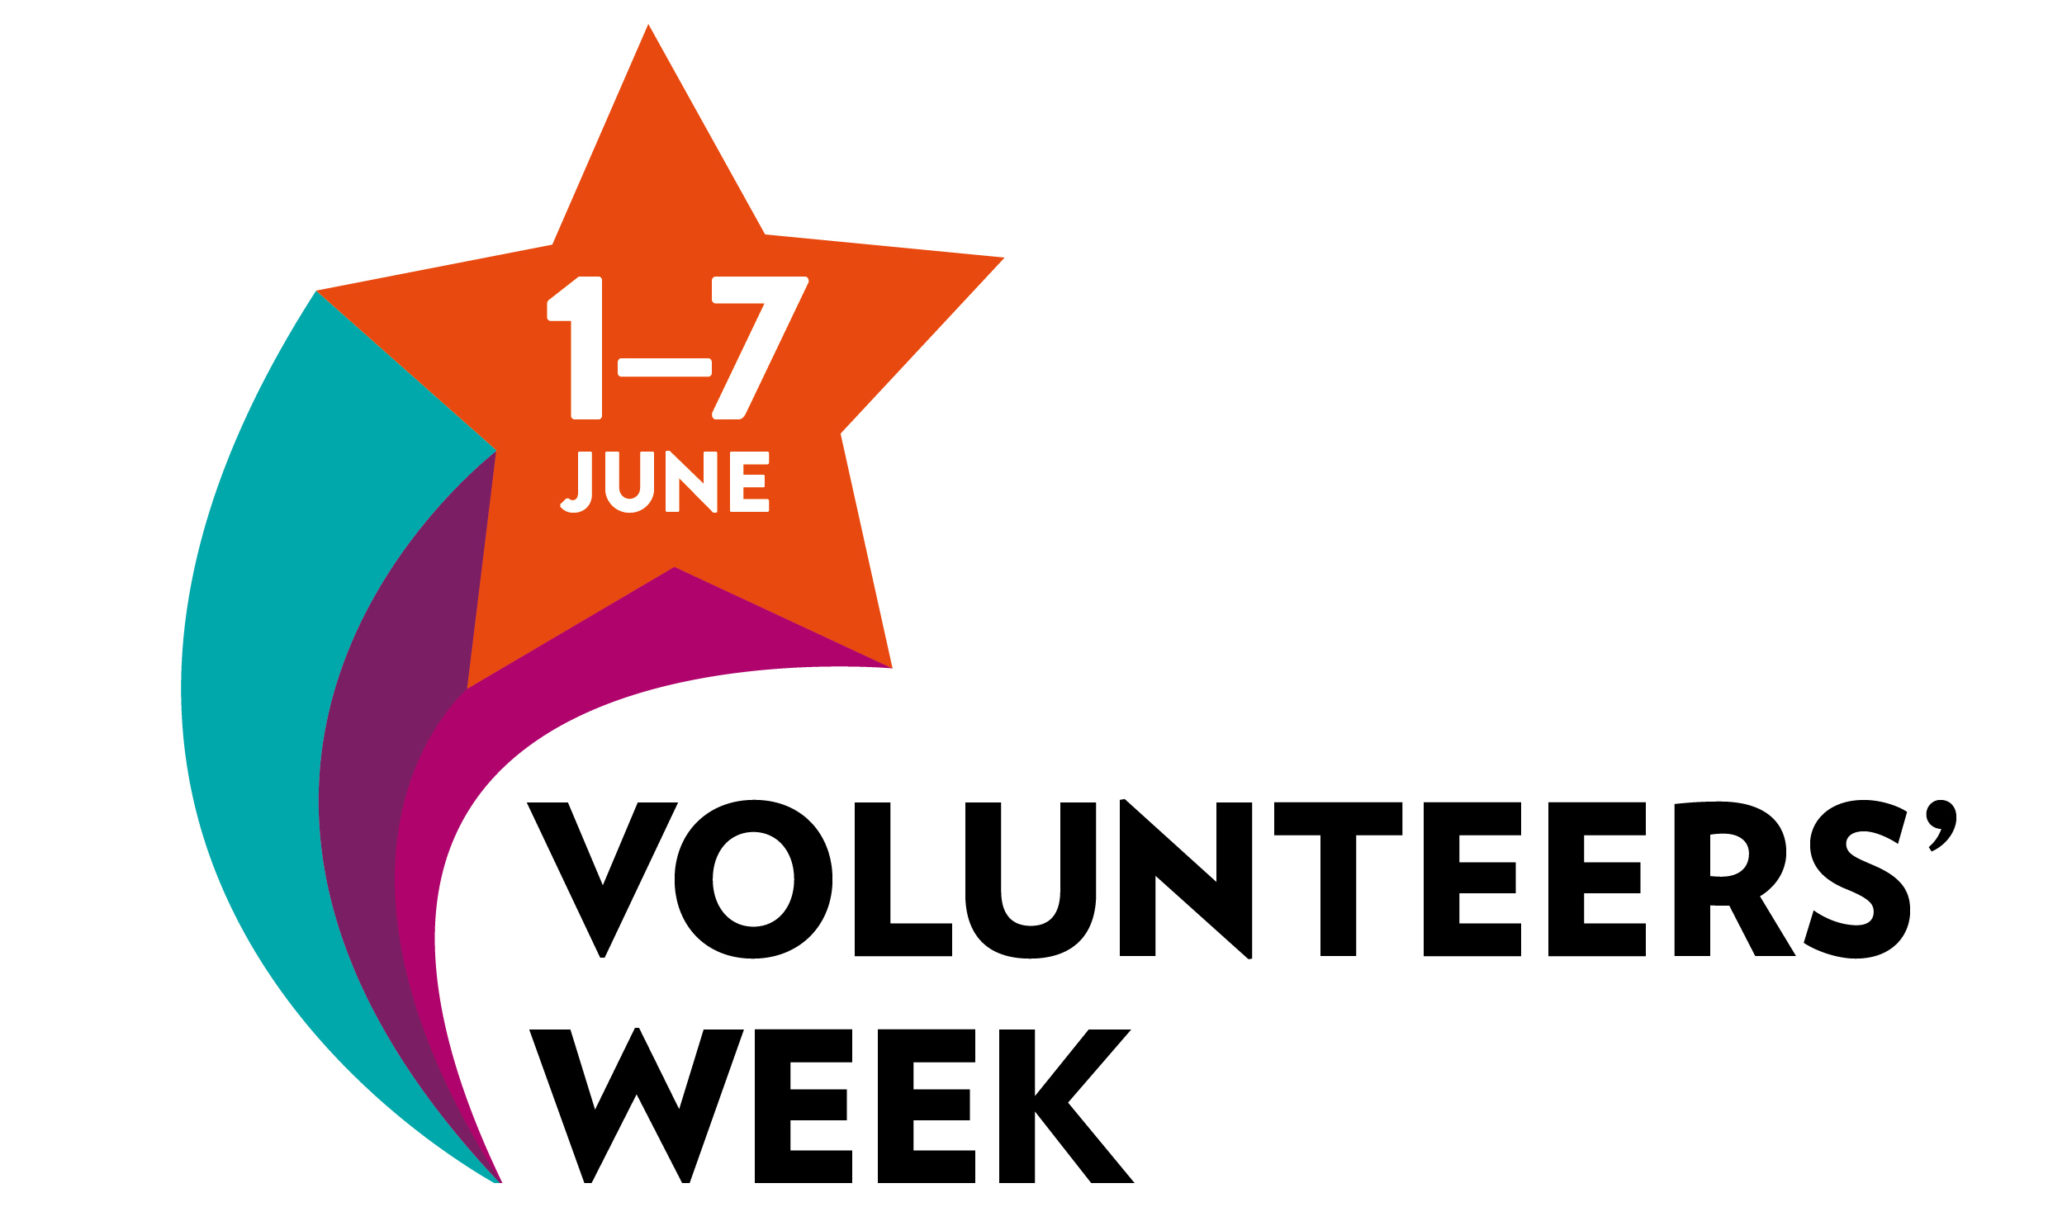 About Volunteers Week Volunteers Week